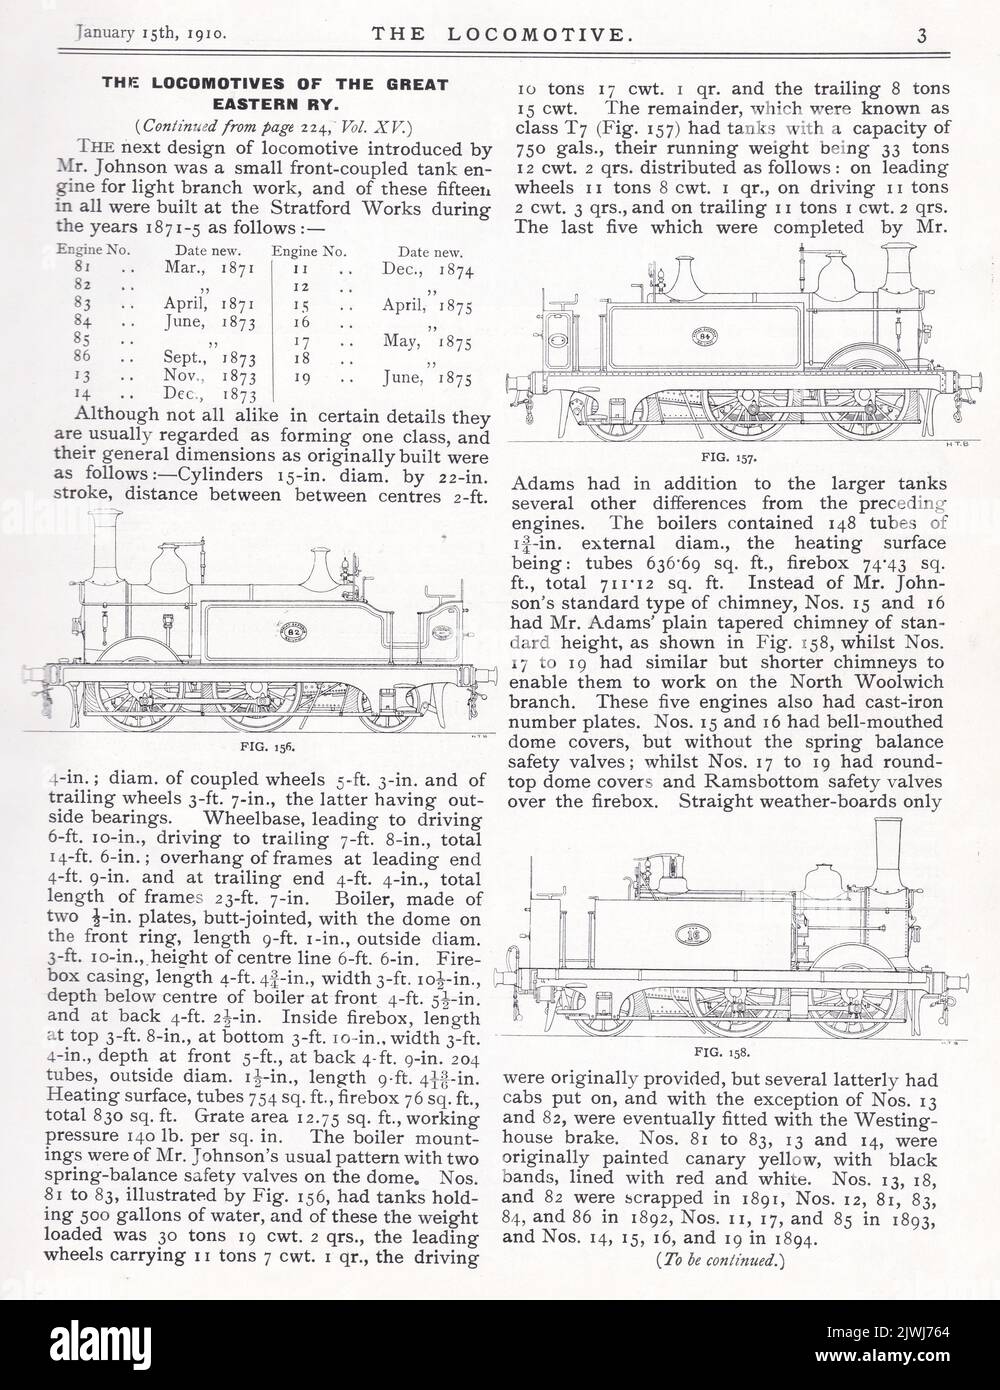 Las locomotoras del Gran RY Oriental. Foto de stock